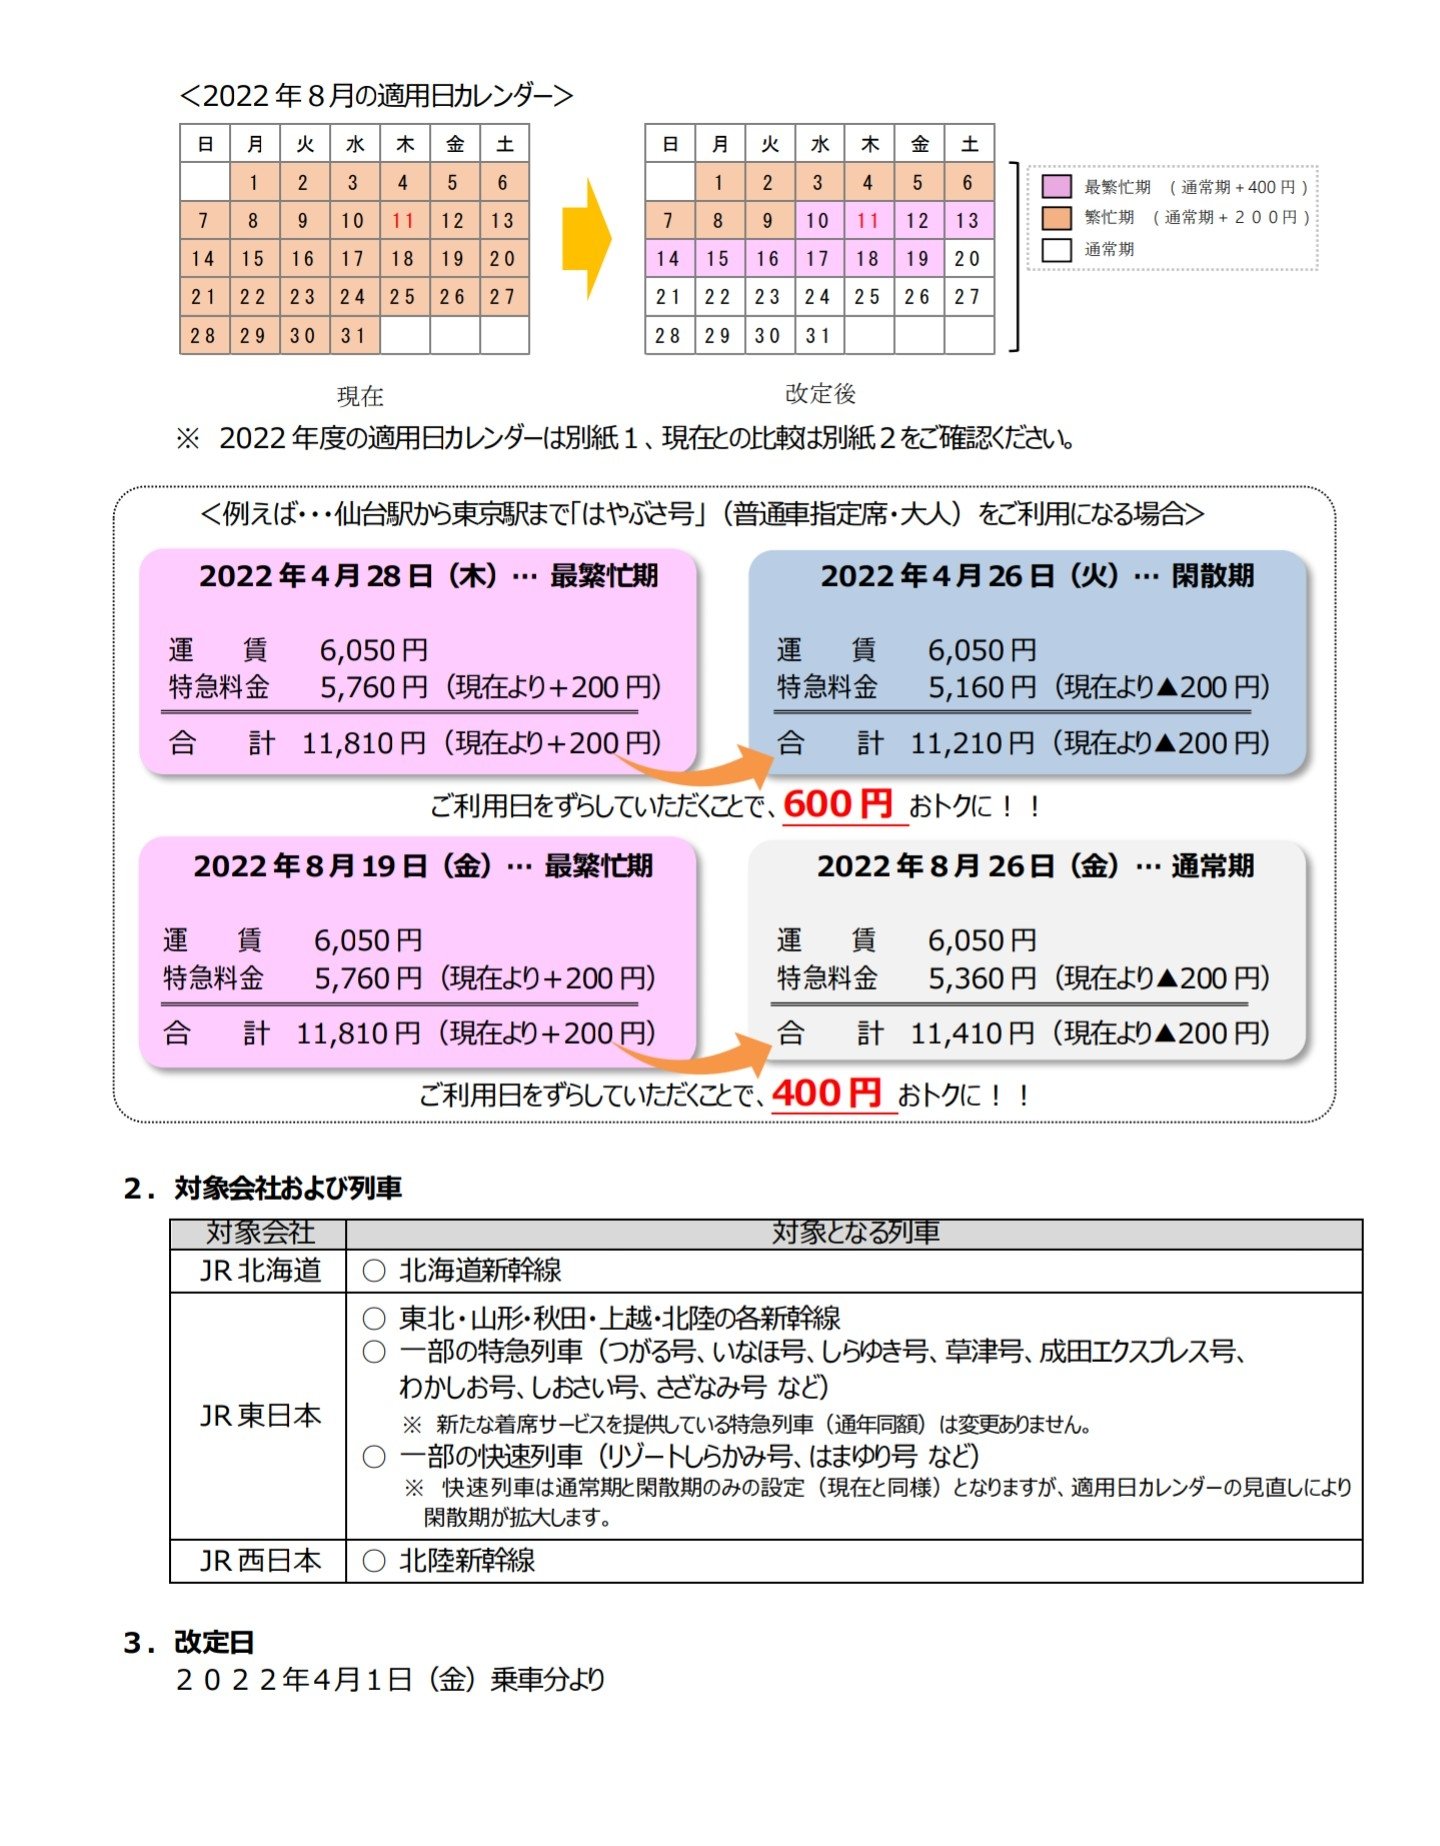 2022 期 カレンダー 新幹線 繁忙 JR旅客3社の指定席特急料金「最繁忙期」新設 最大400円の値上げと値下げ